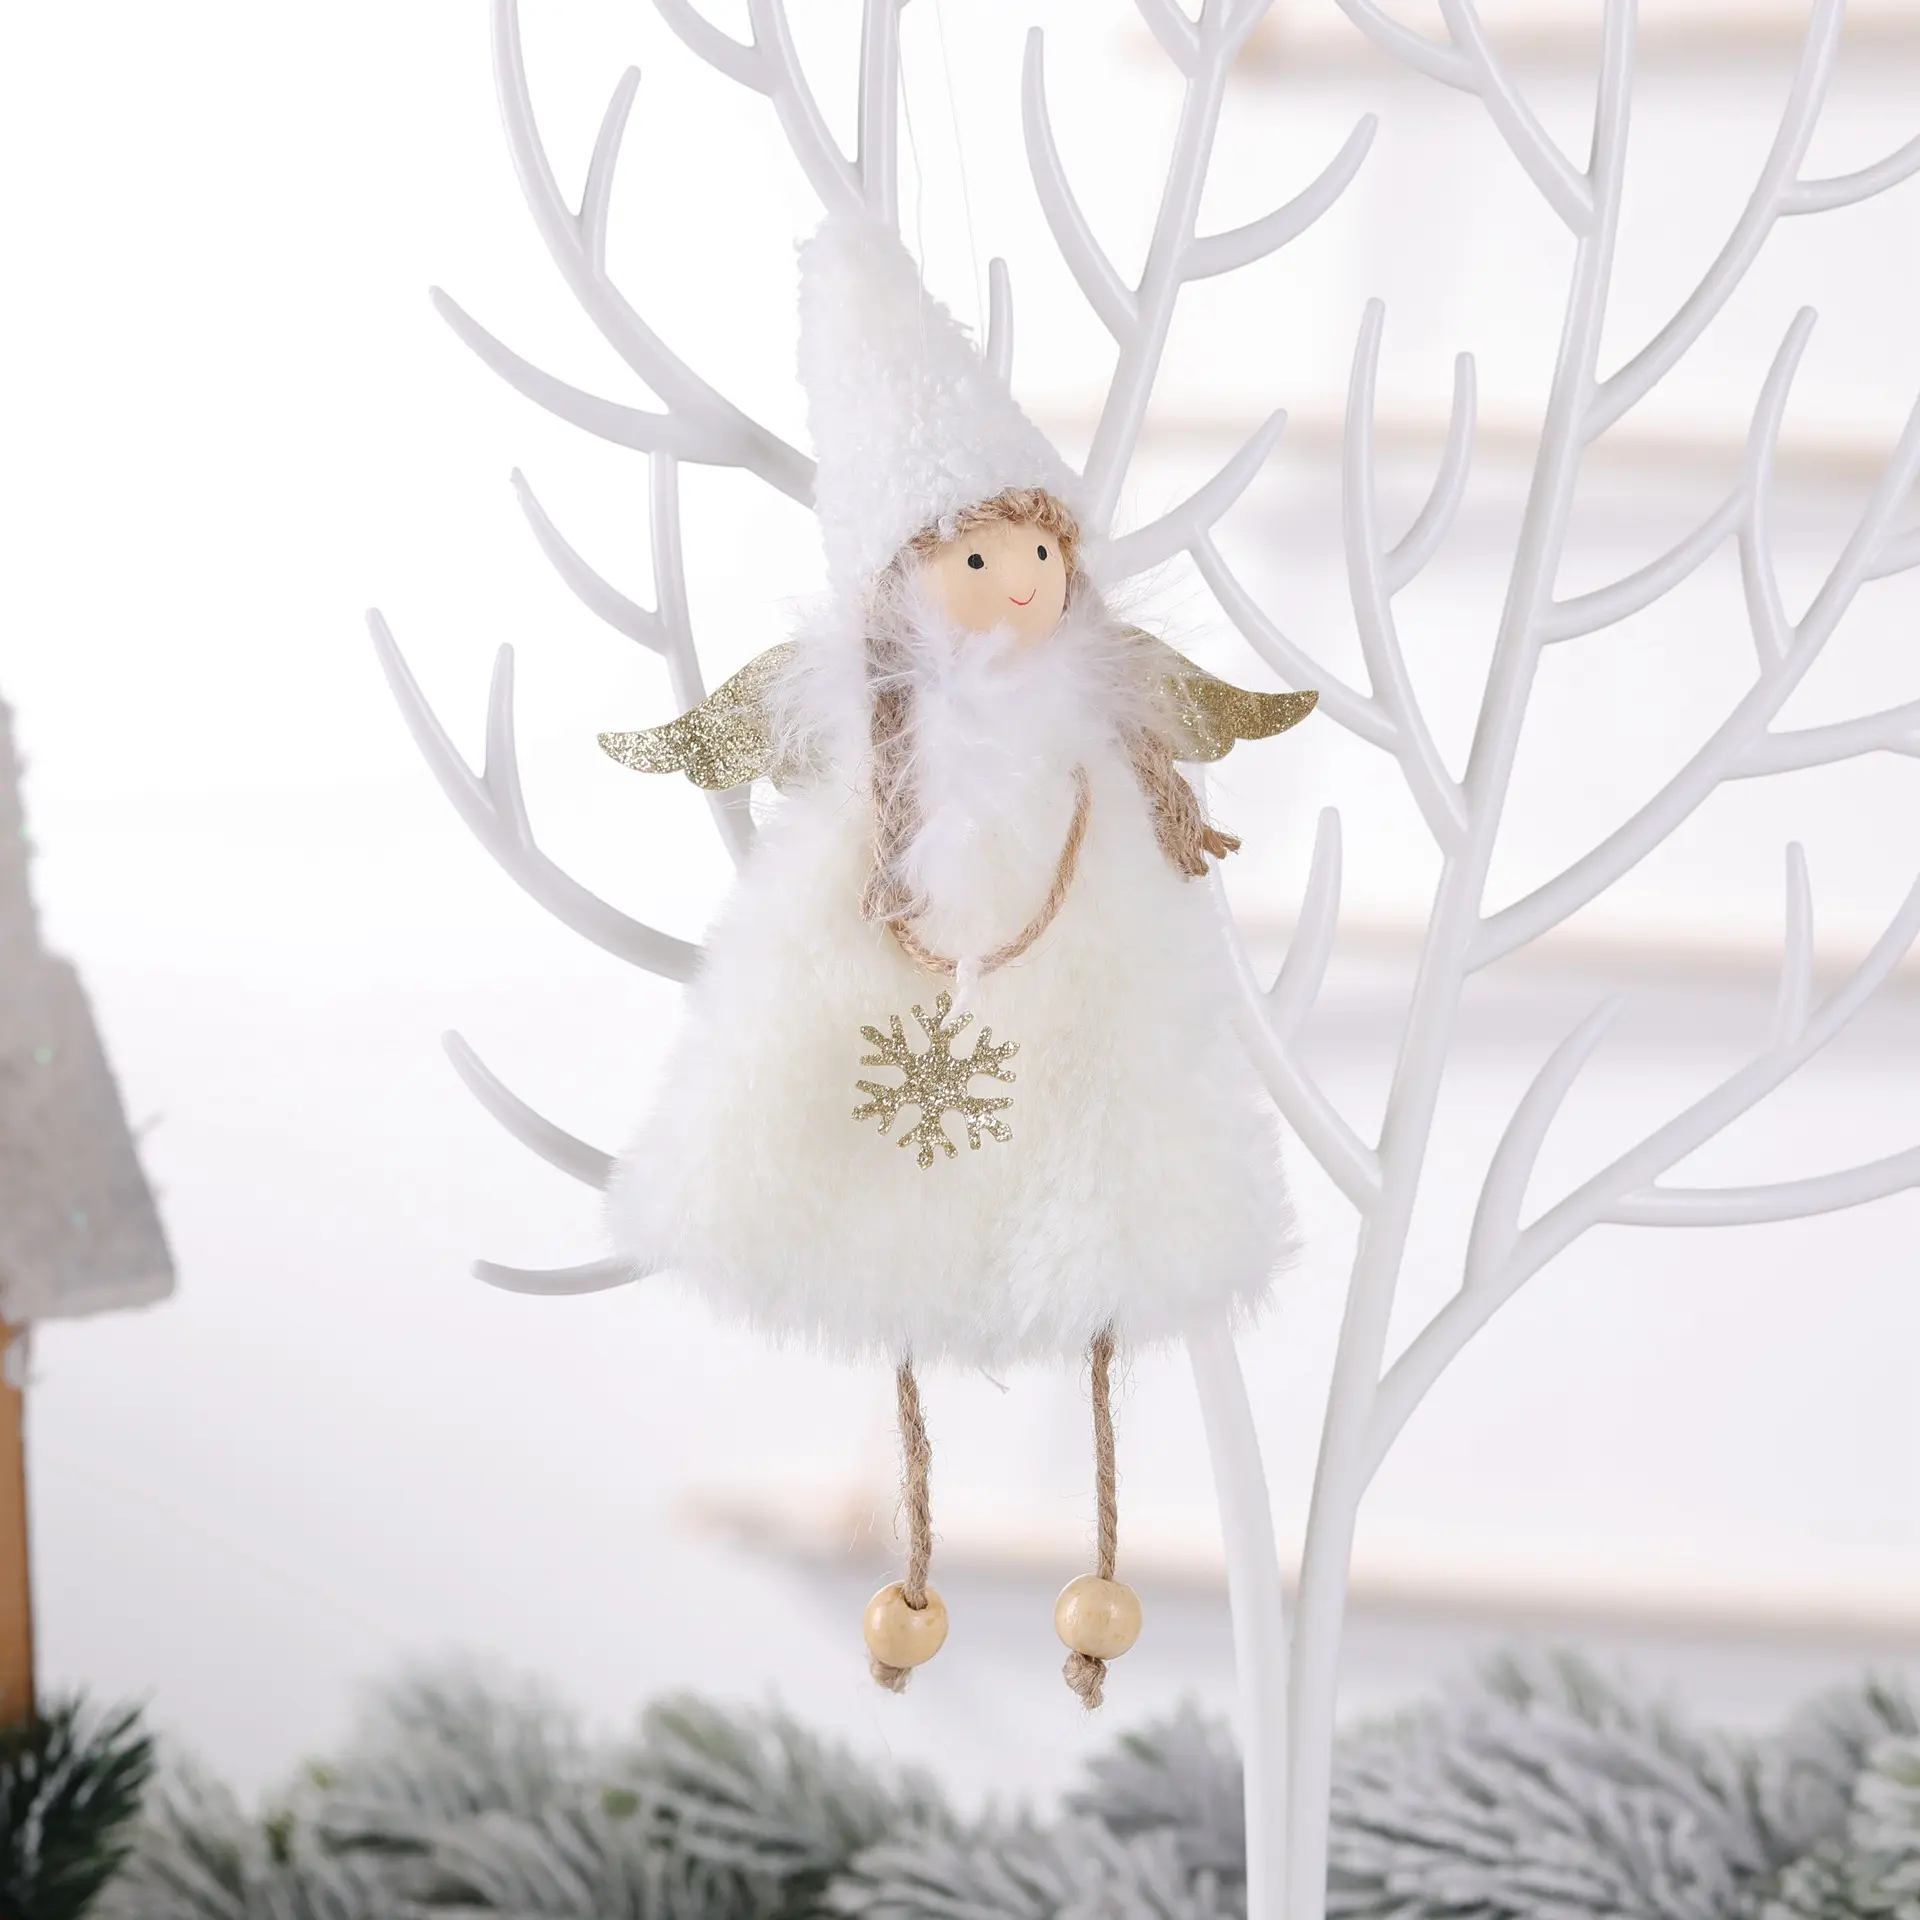 Guirnalda seca juego de ropa cama para cuna de BEB Regalo ecológico decoración colgante árbol de Navidad juguete muñeca colgar decoraciones